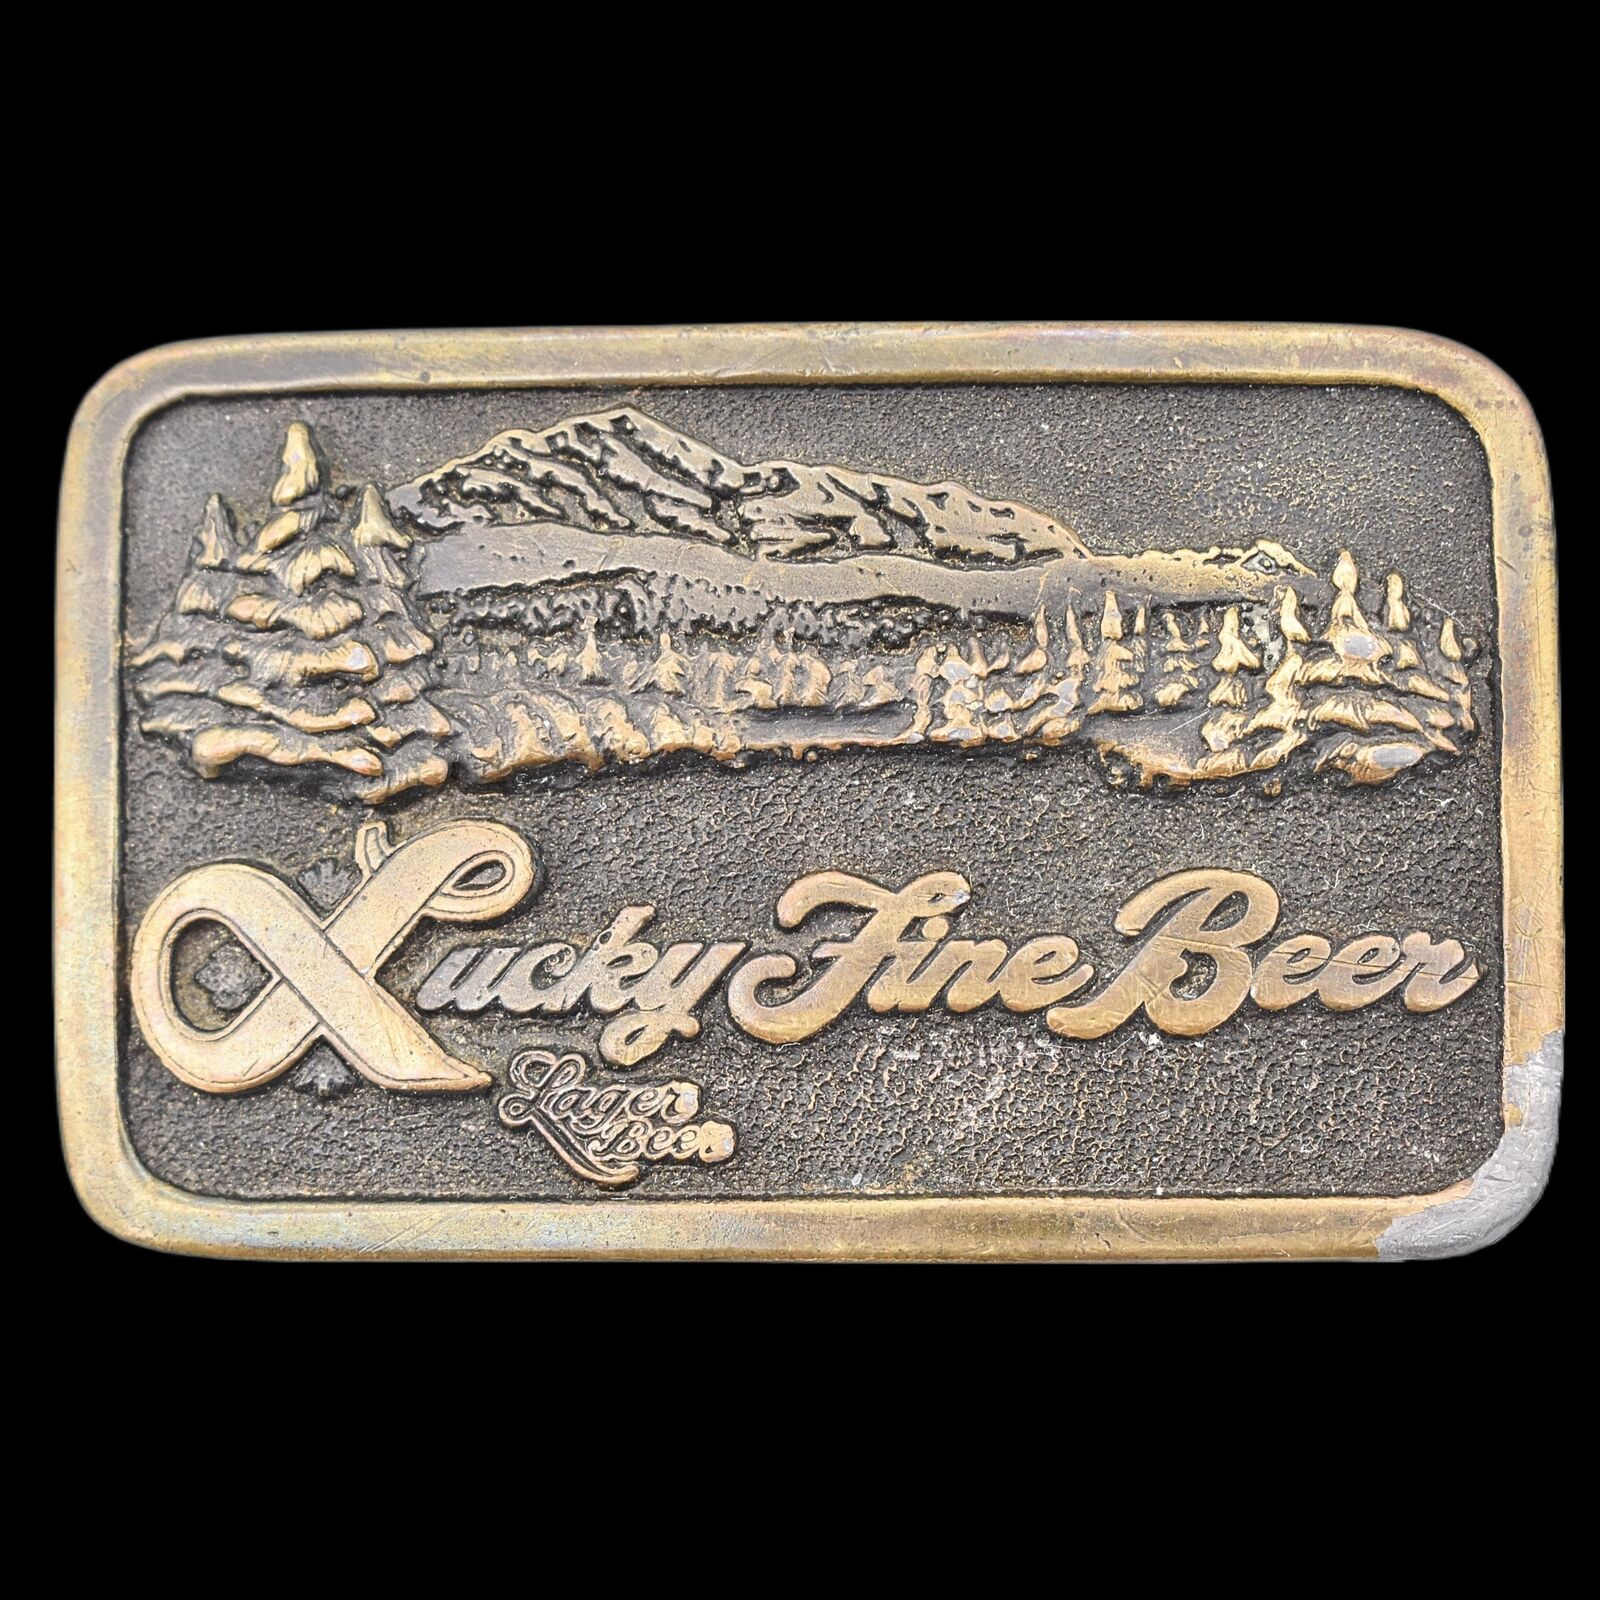 1970s Lucky Fine Beer Vintage Belt Buckle